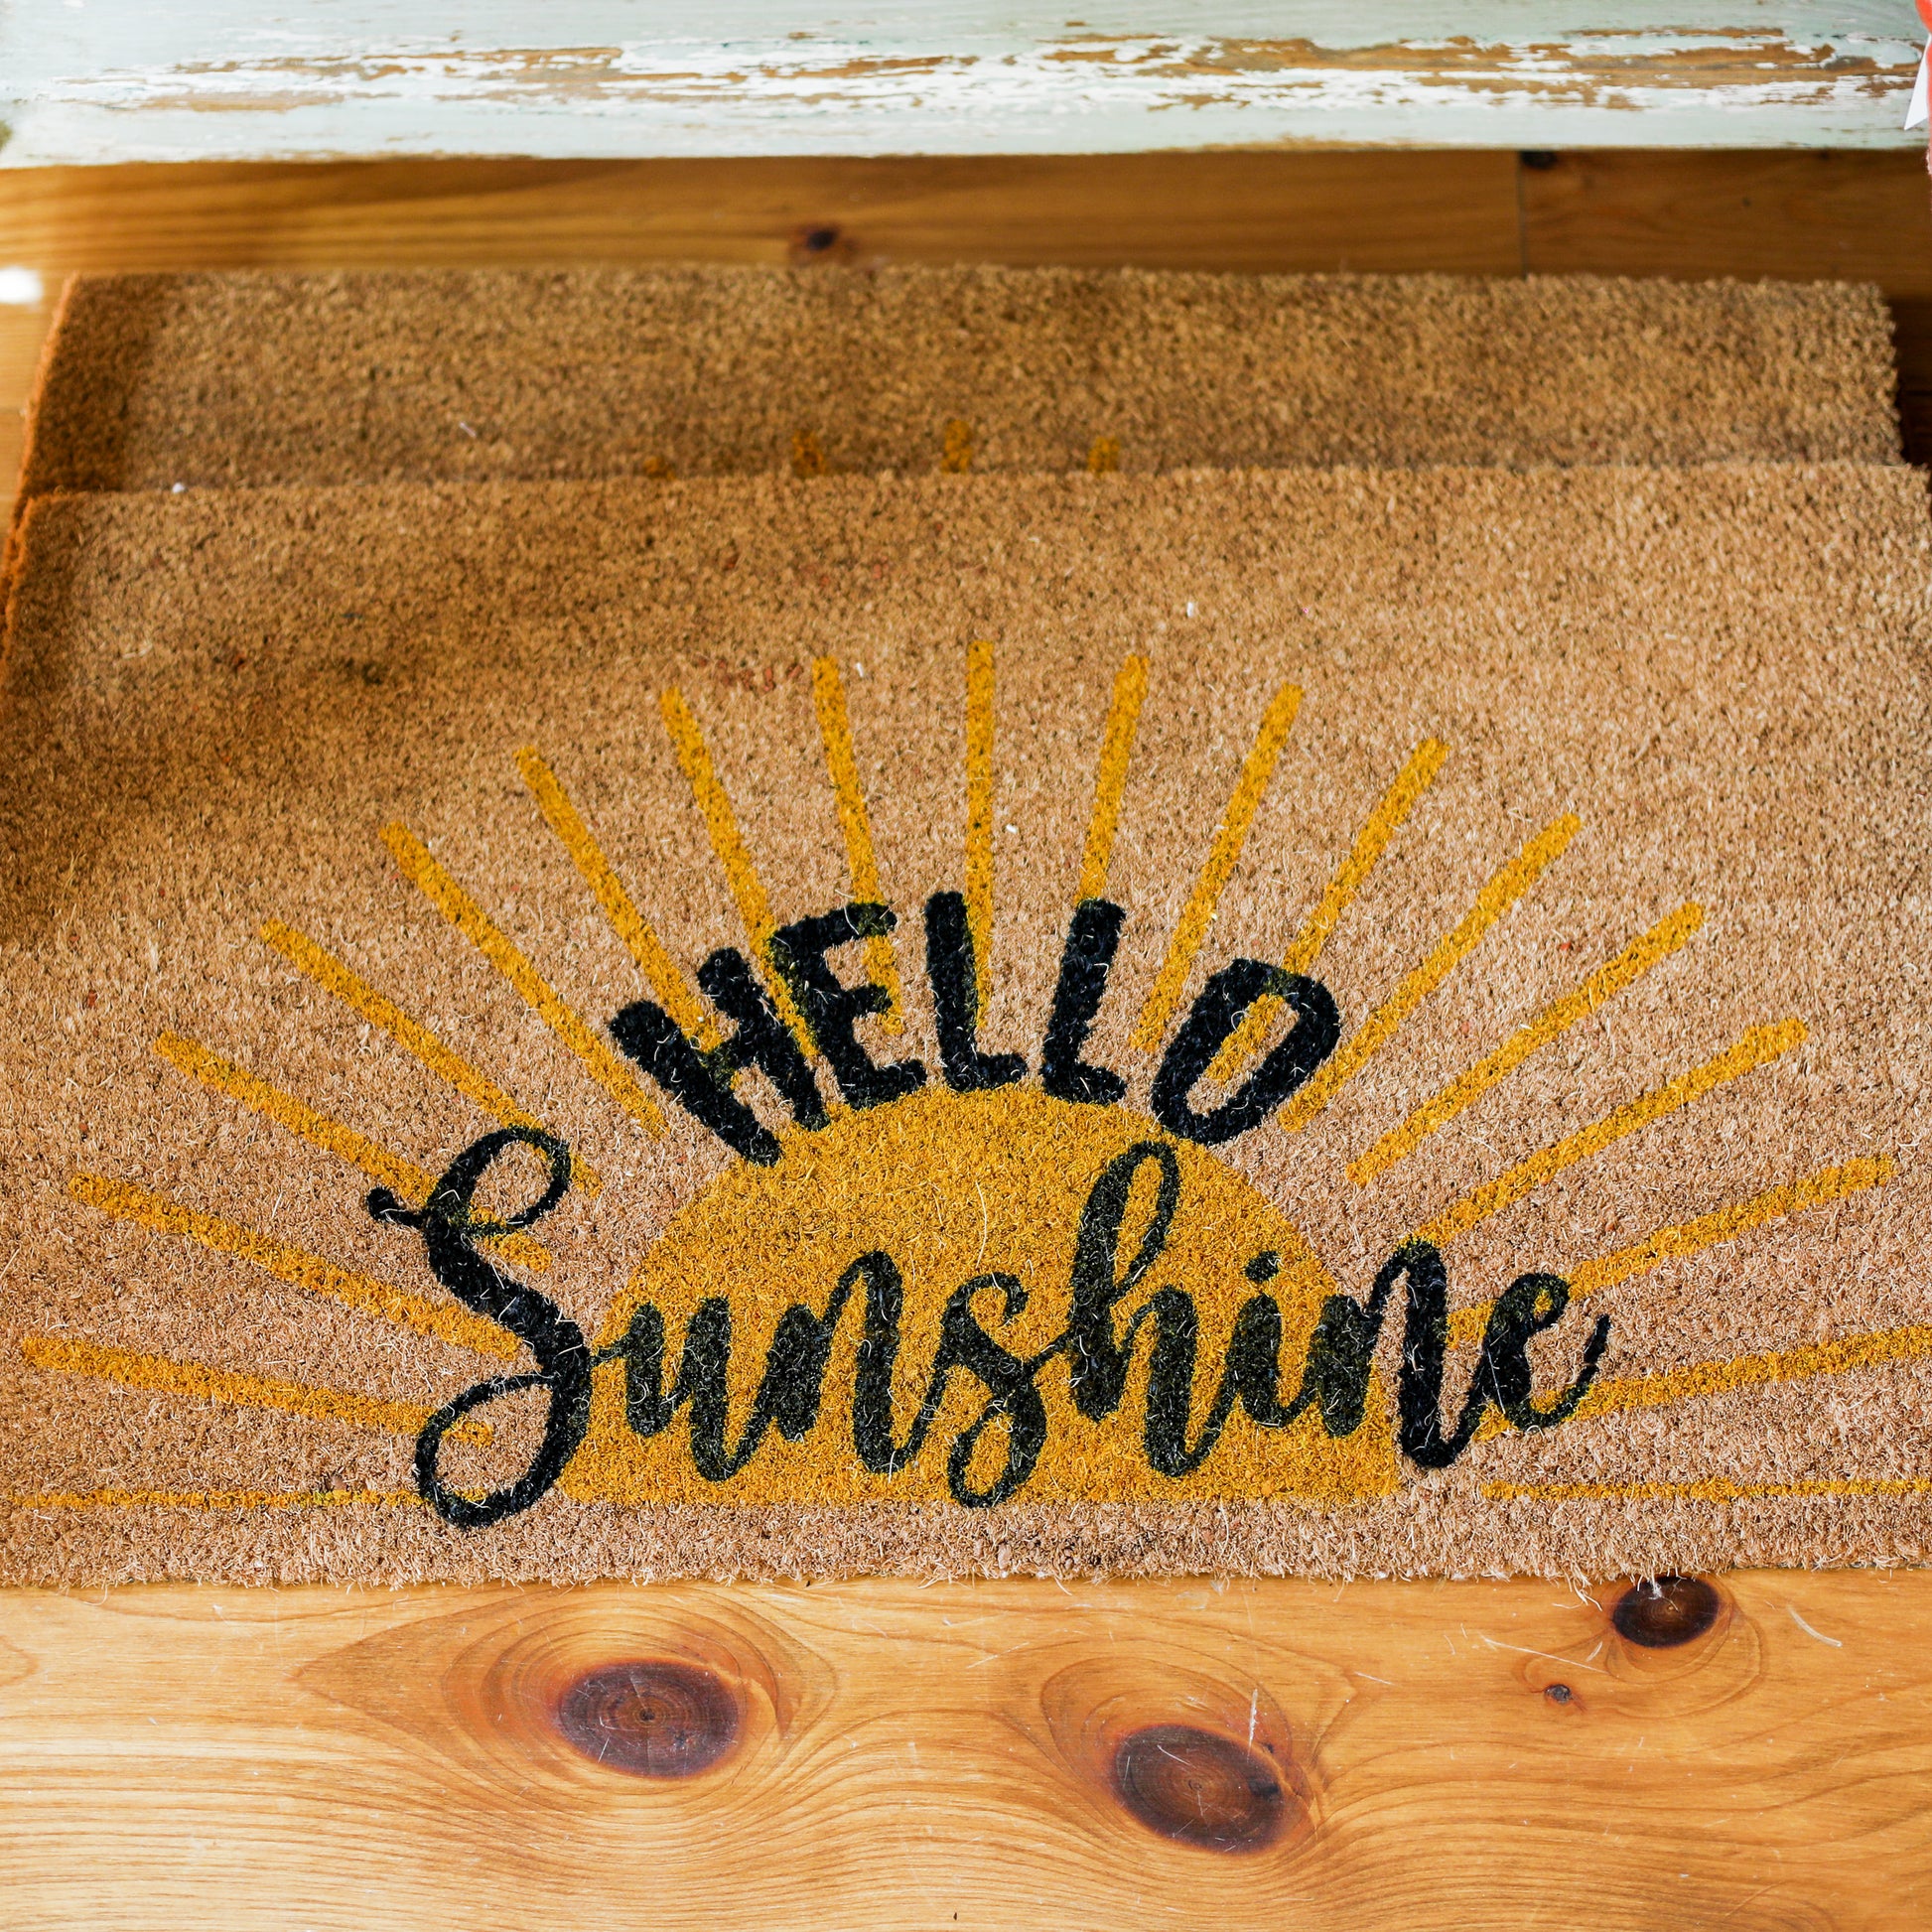 Custom Outdoor Hello Sunshine Doormat, Large Spring Outdoor Door